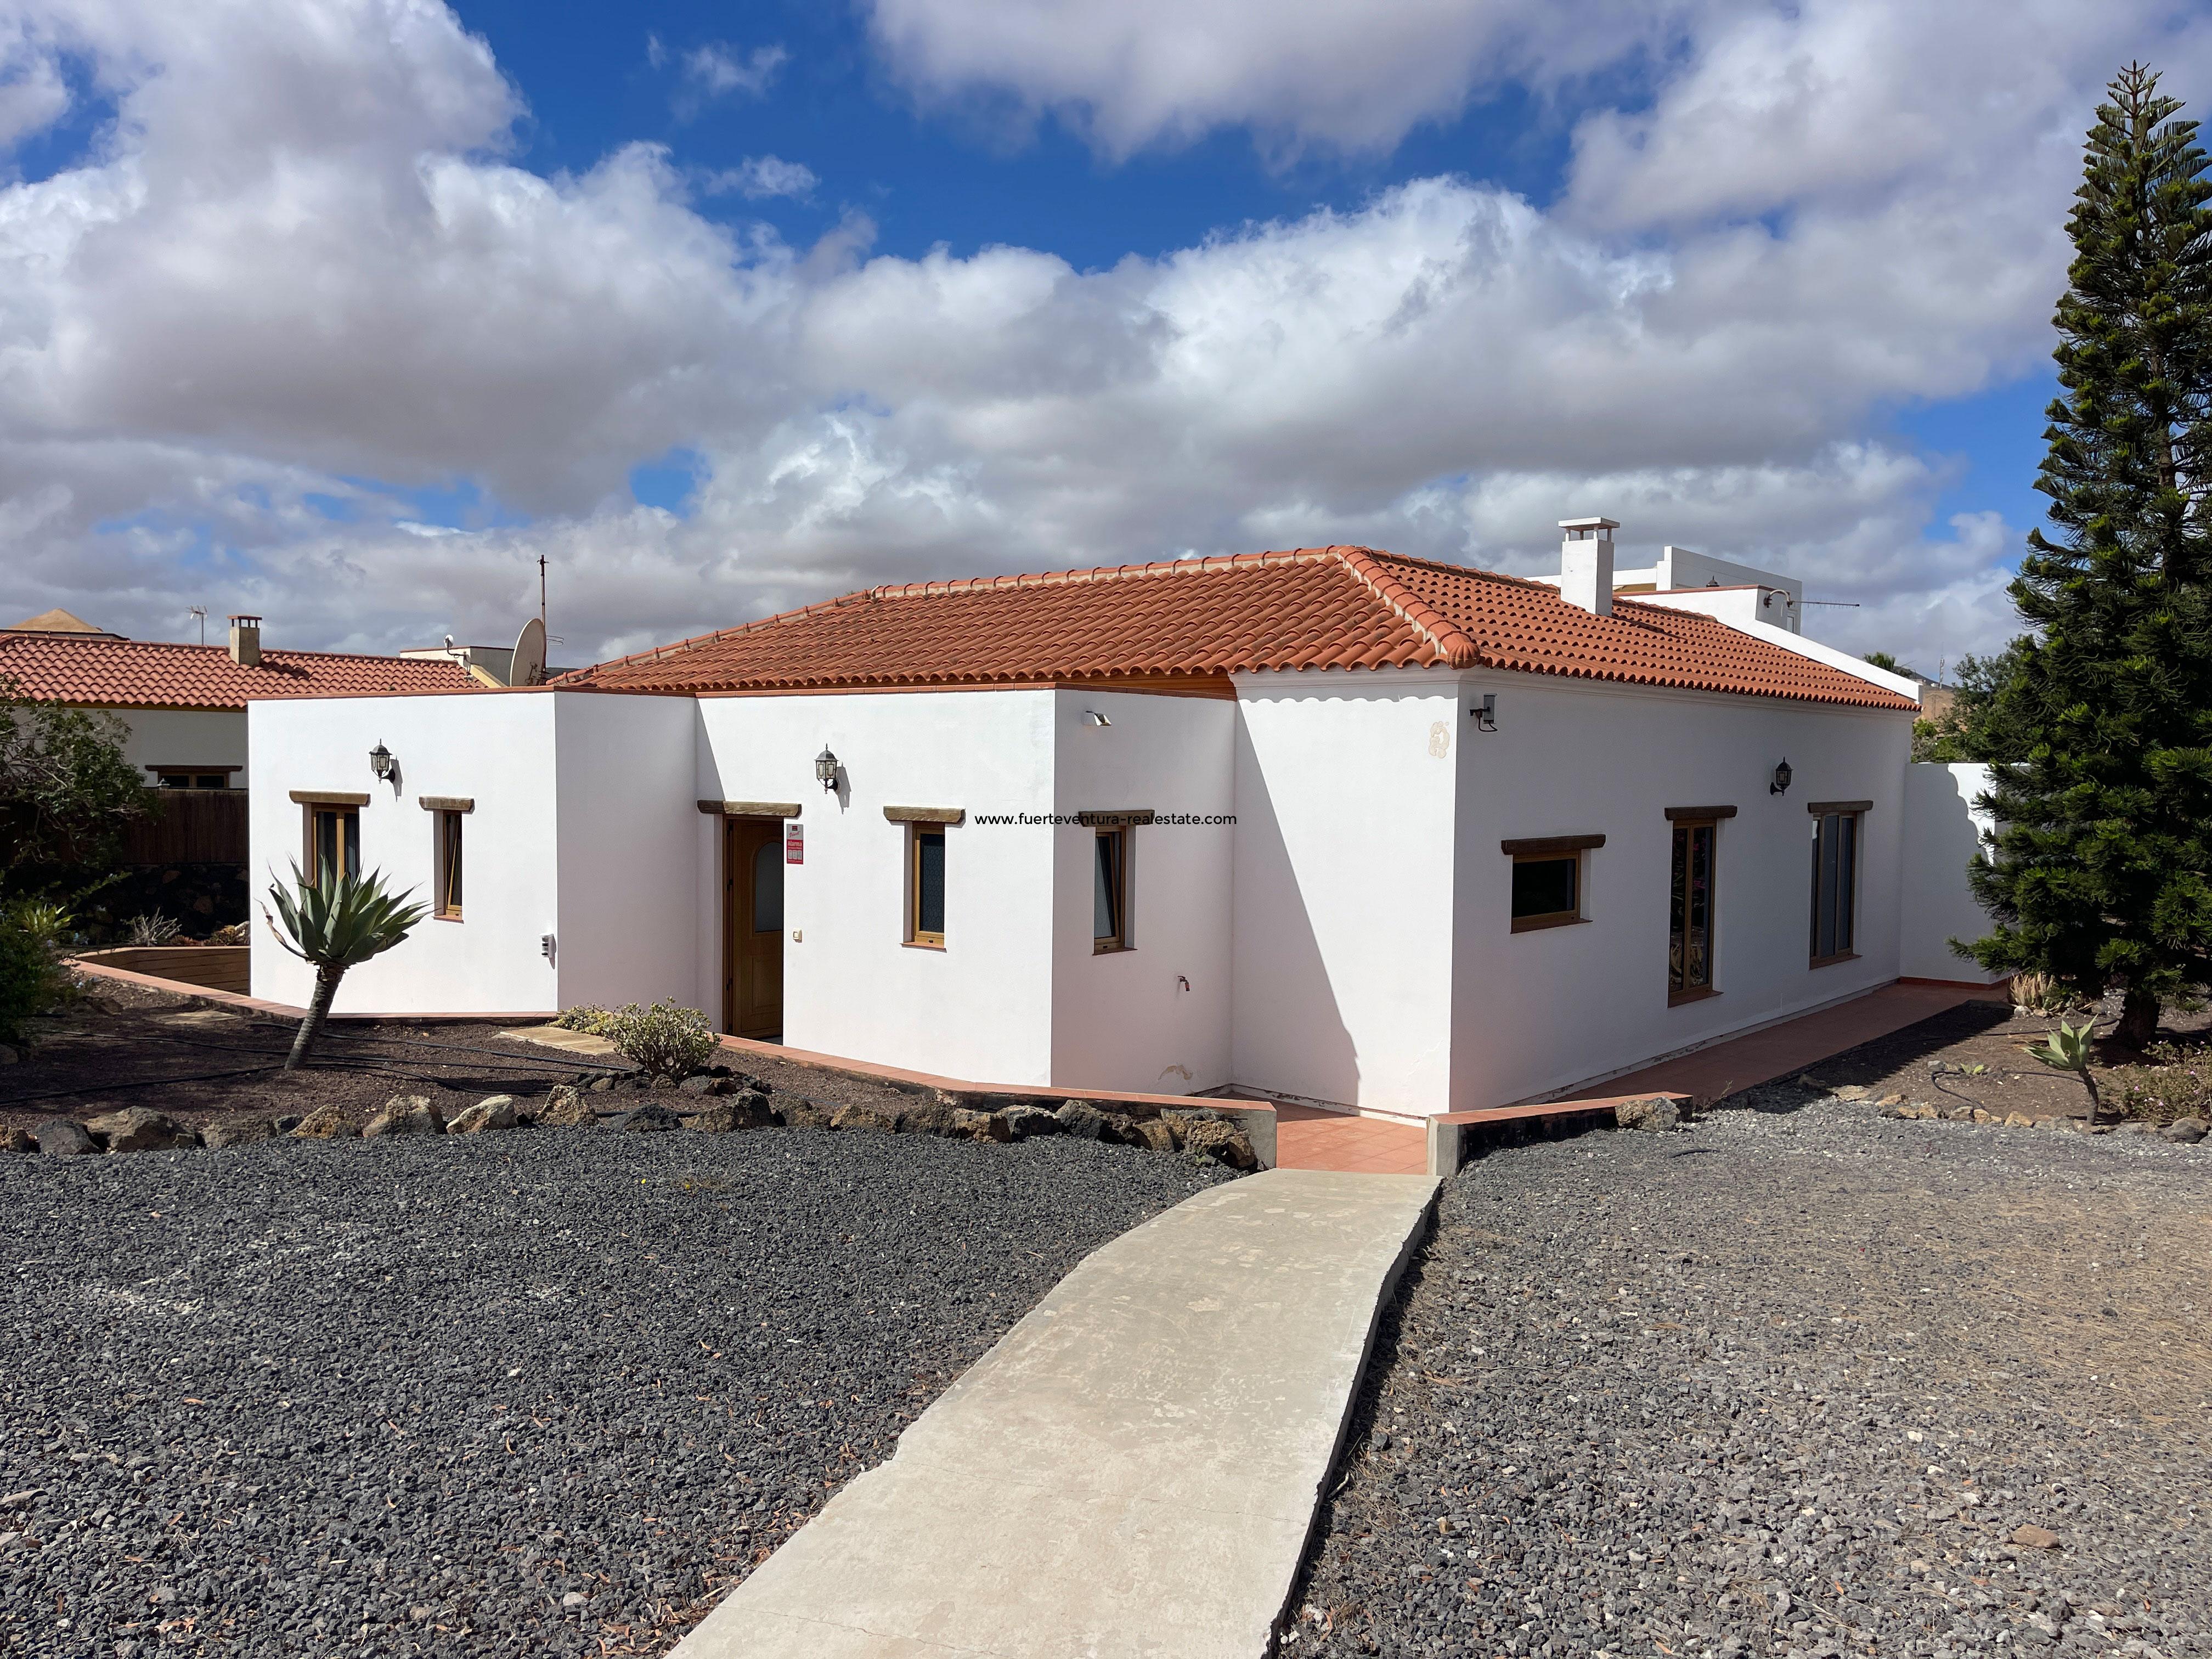 ¡En venta! Muy bonita villa con 5 dormitorios y piscina climatizada en Villaverde.